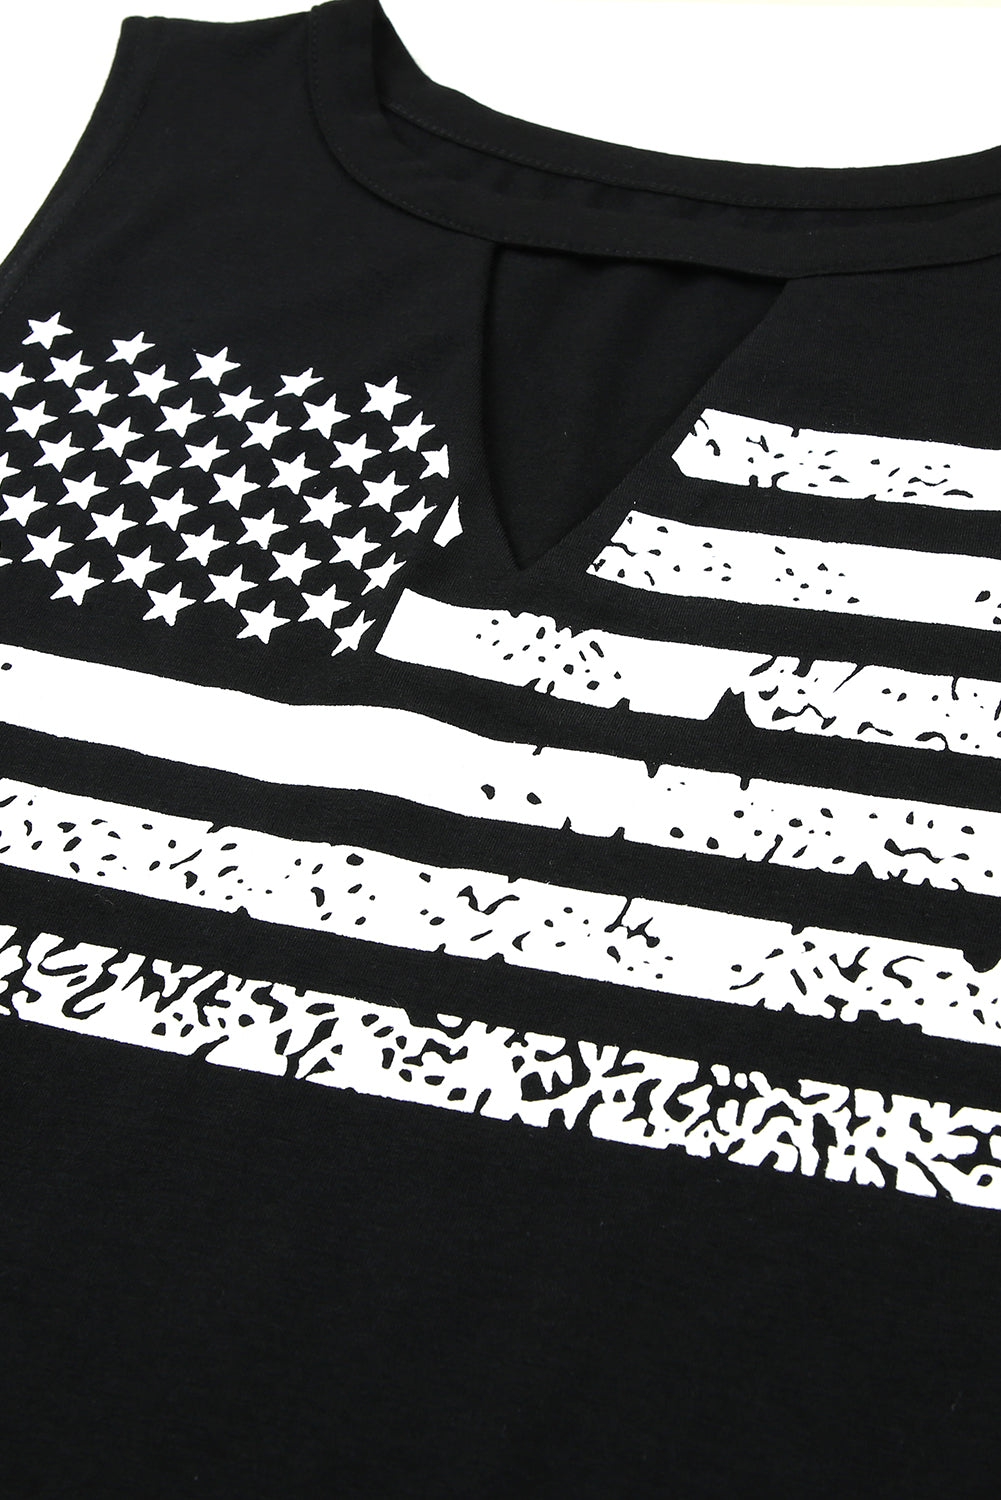 Crna majica bez rukava s printom američke zastave